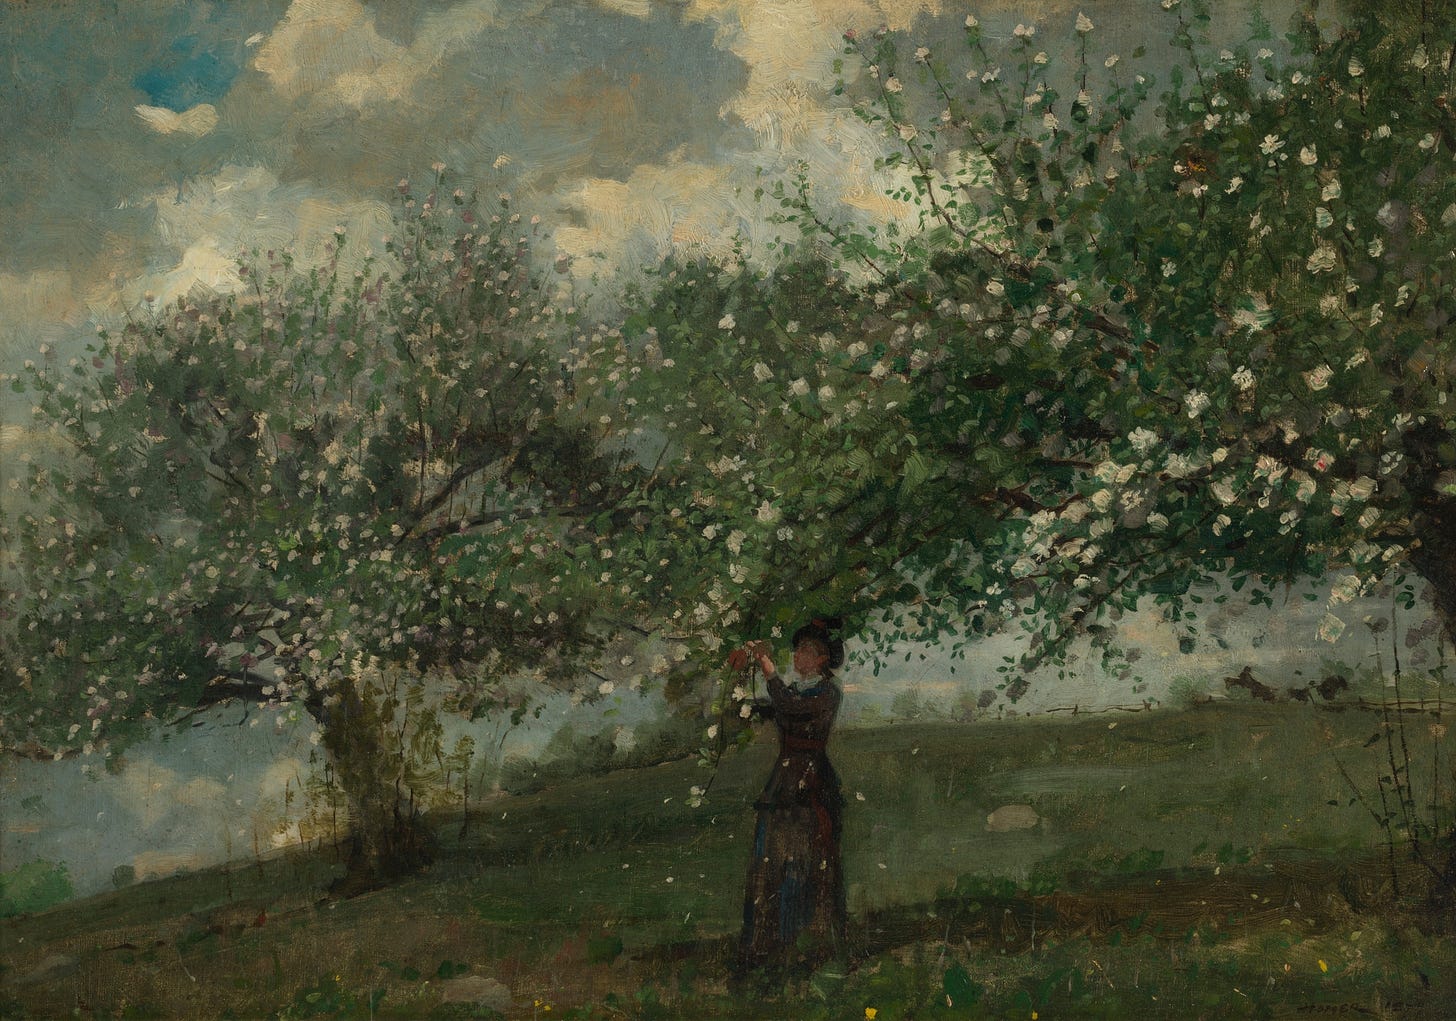 Girl Picking Apple Blossoms (1879)